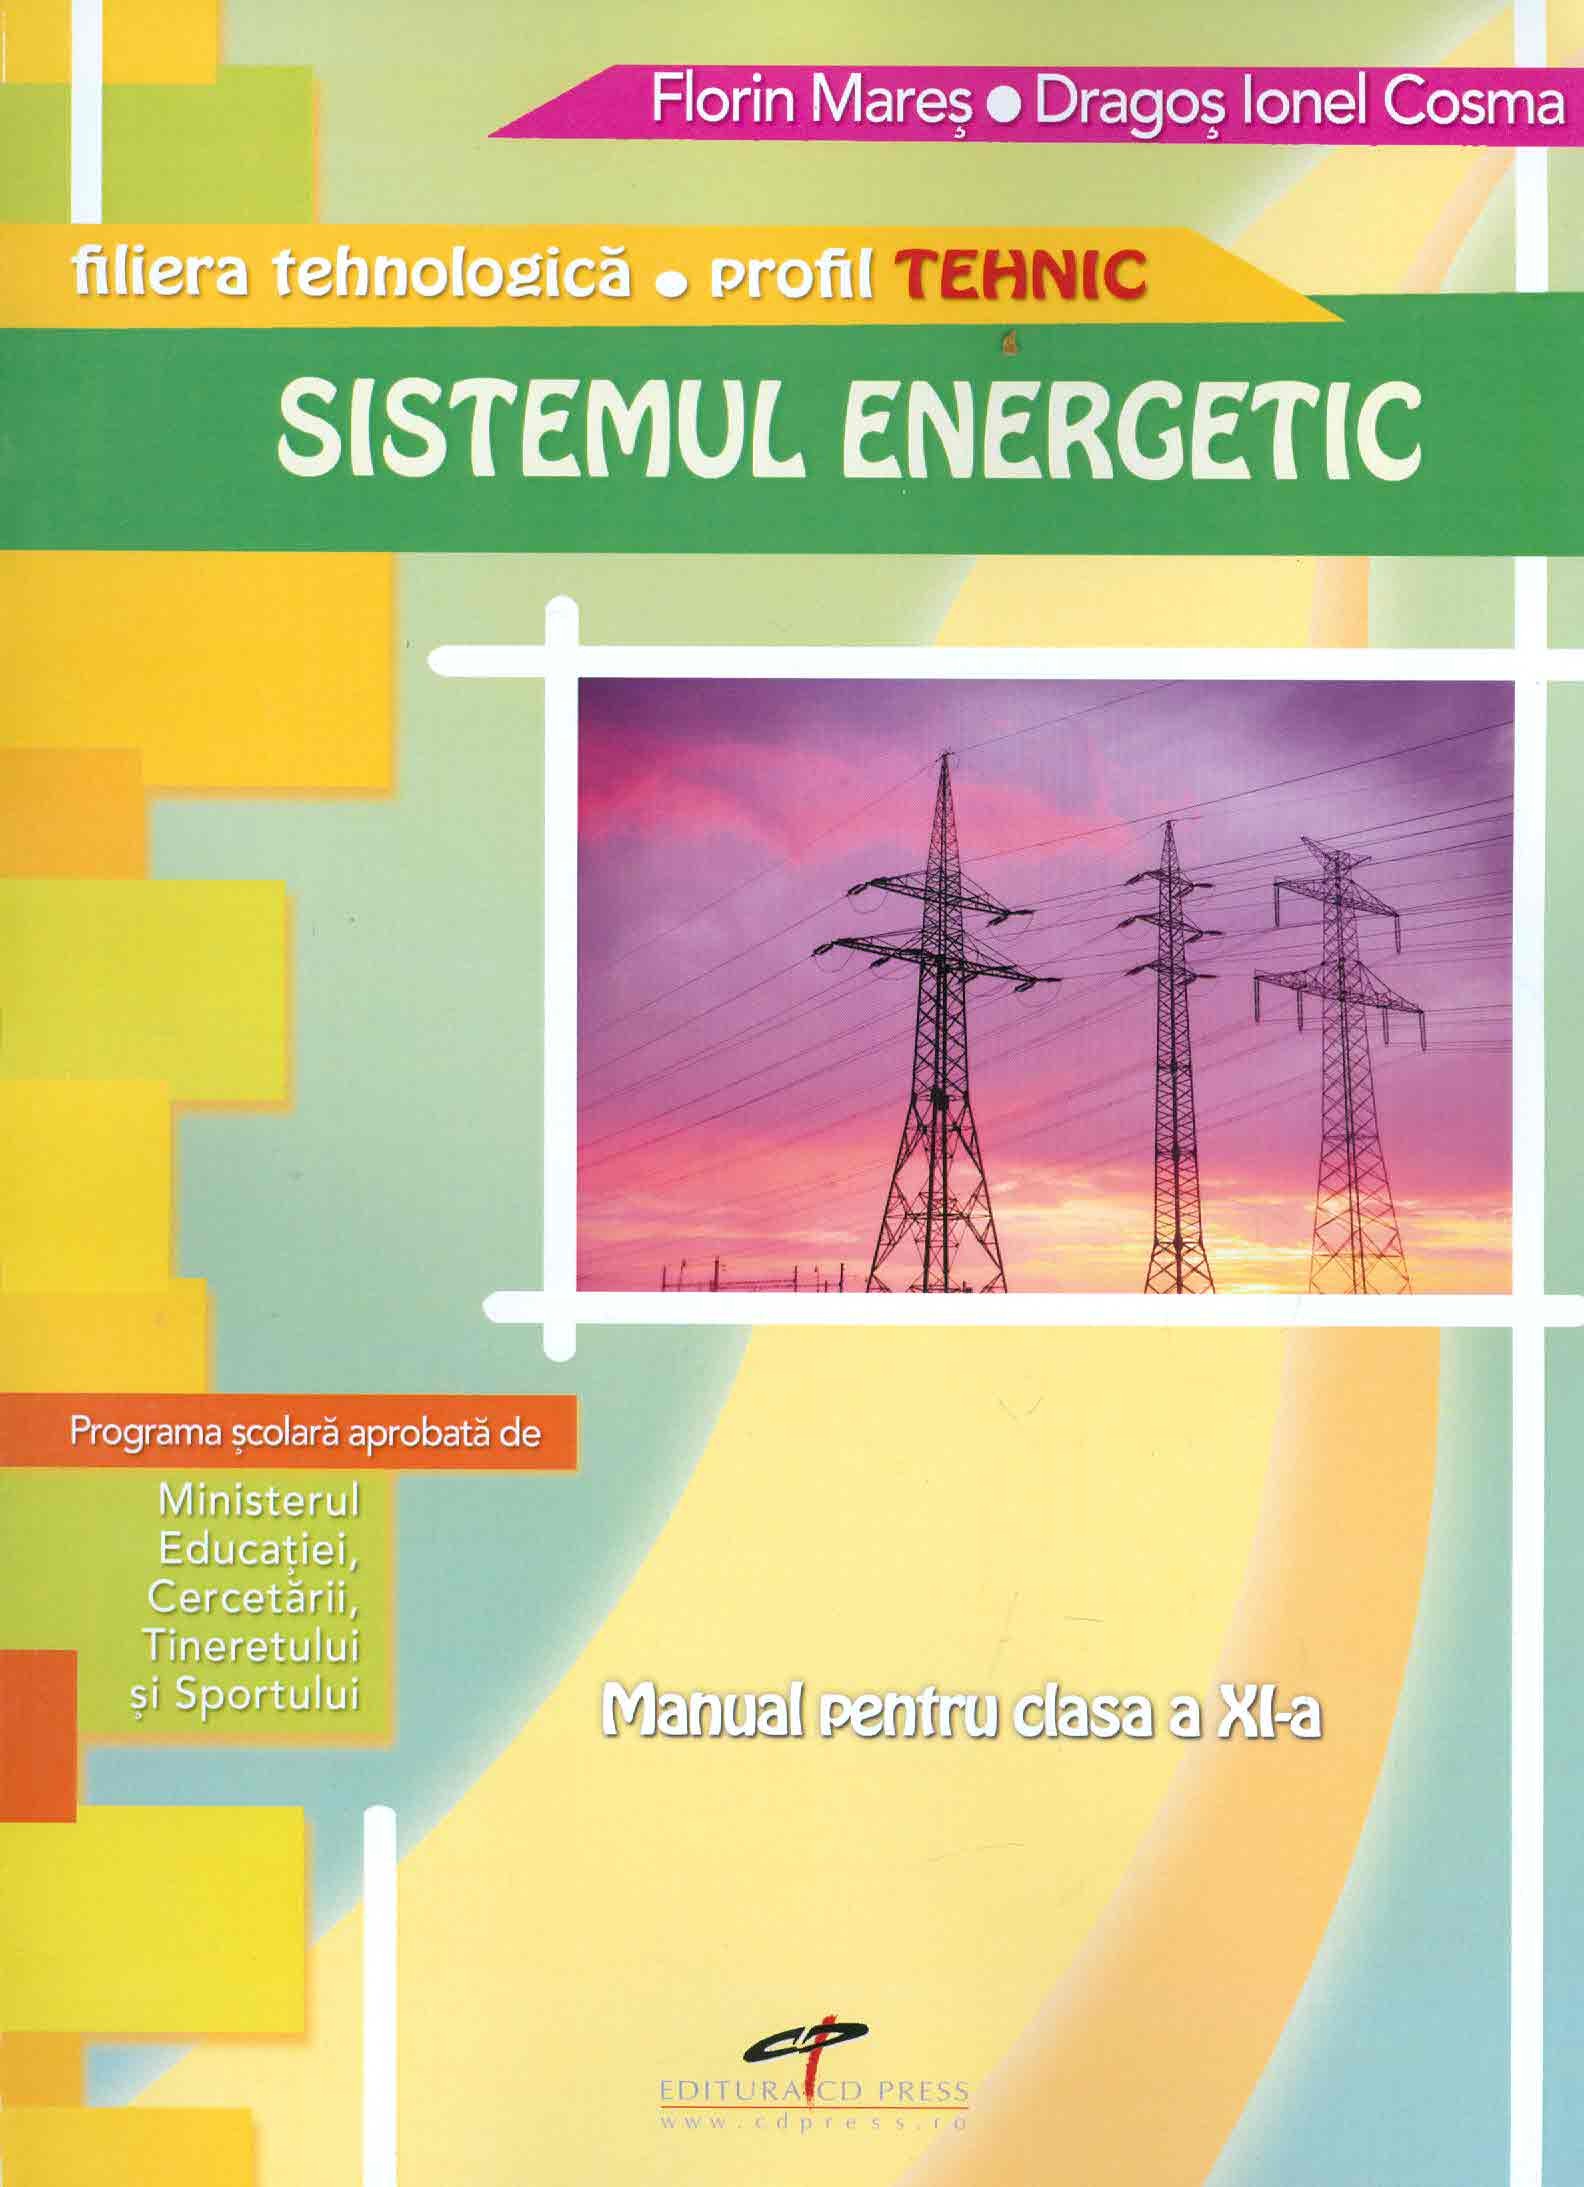 Sistemul energetic - Clasa XI - Manual - Florin Mares, Dragos Ionel Cosma